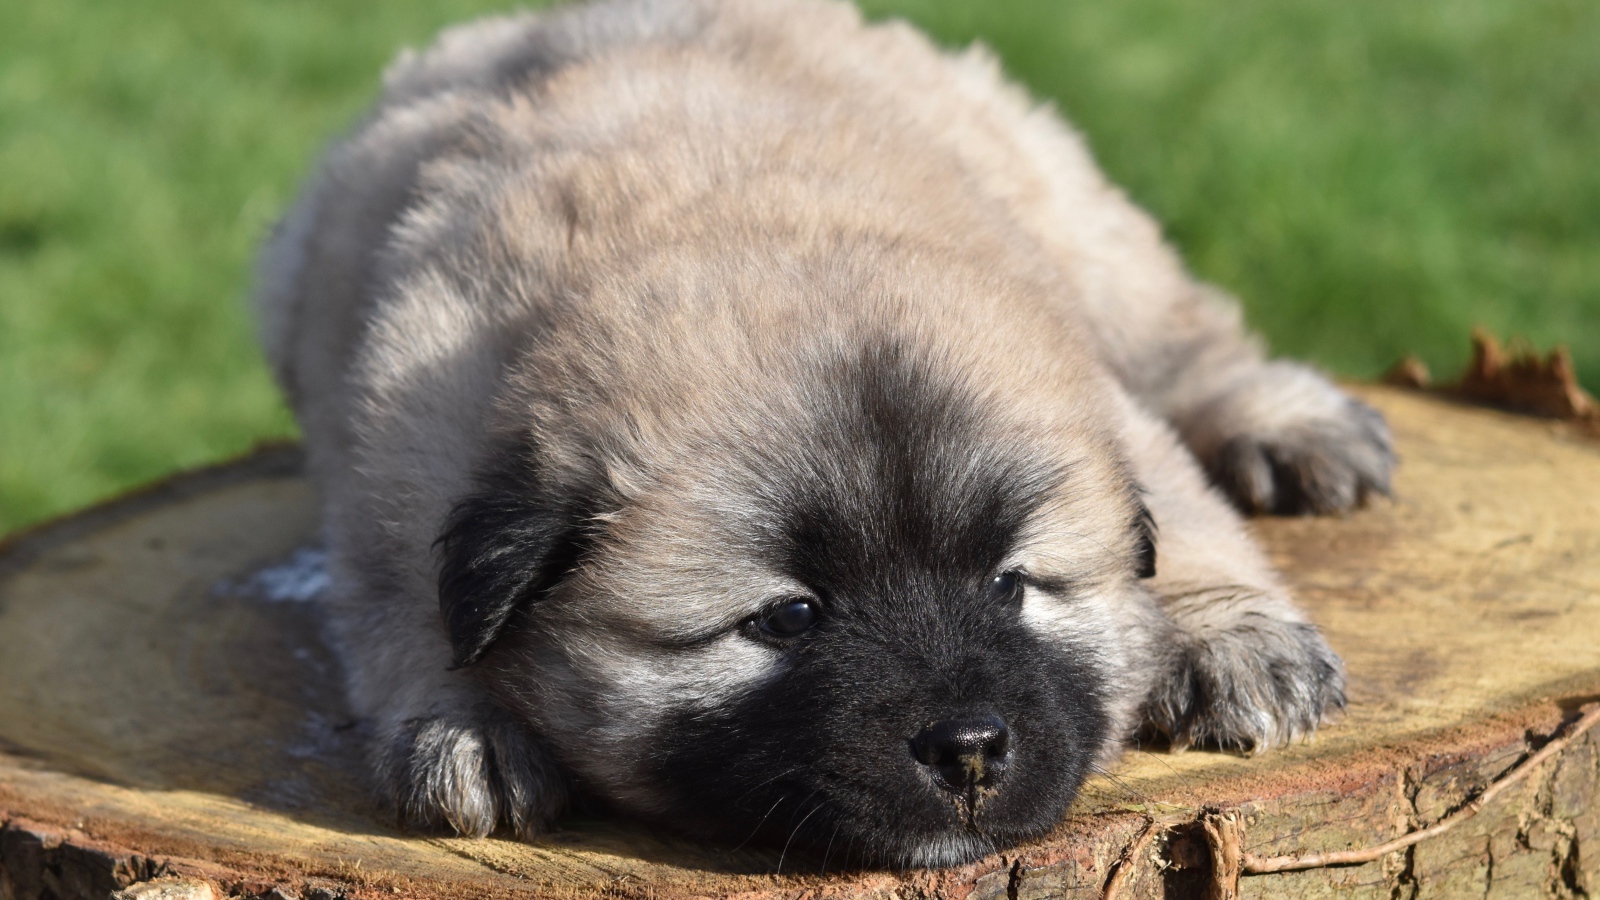 Eurasier puppy lies on a stump